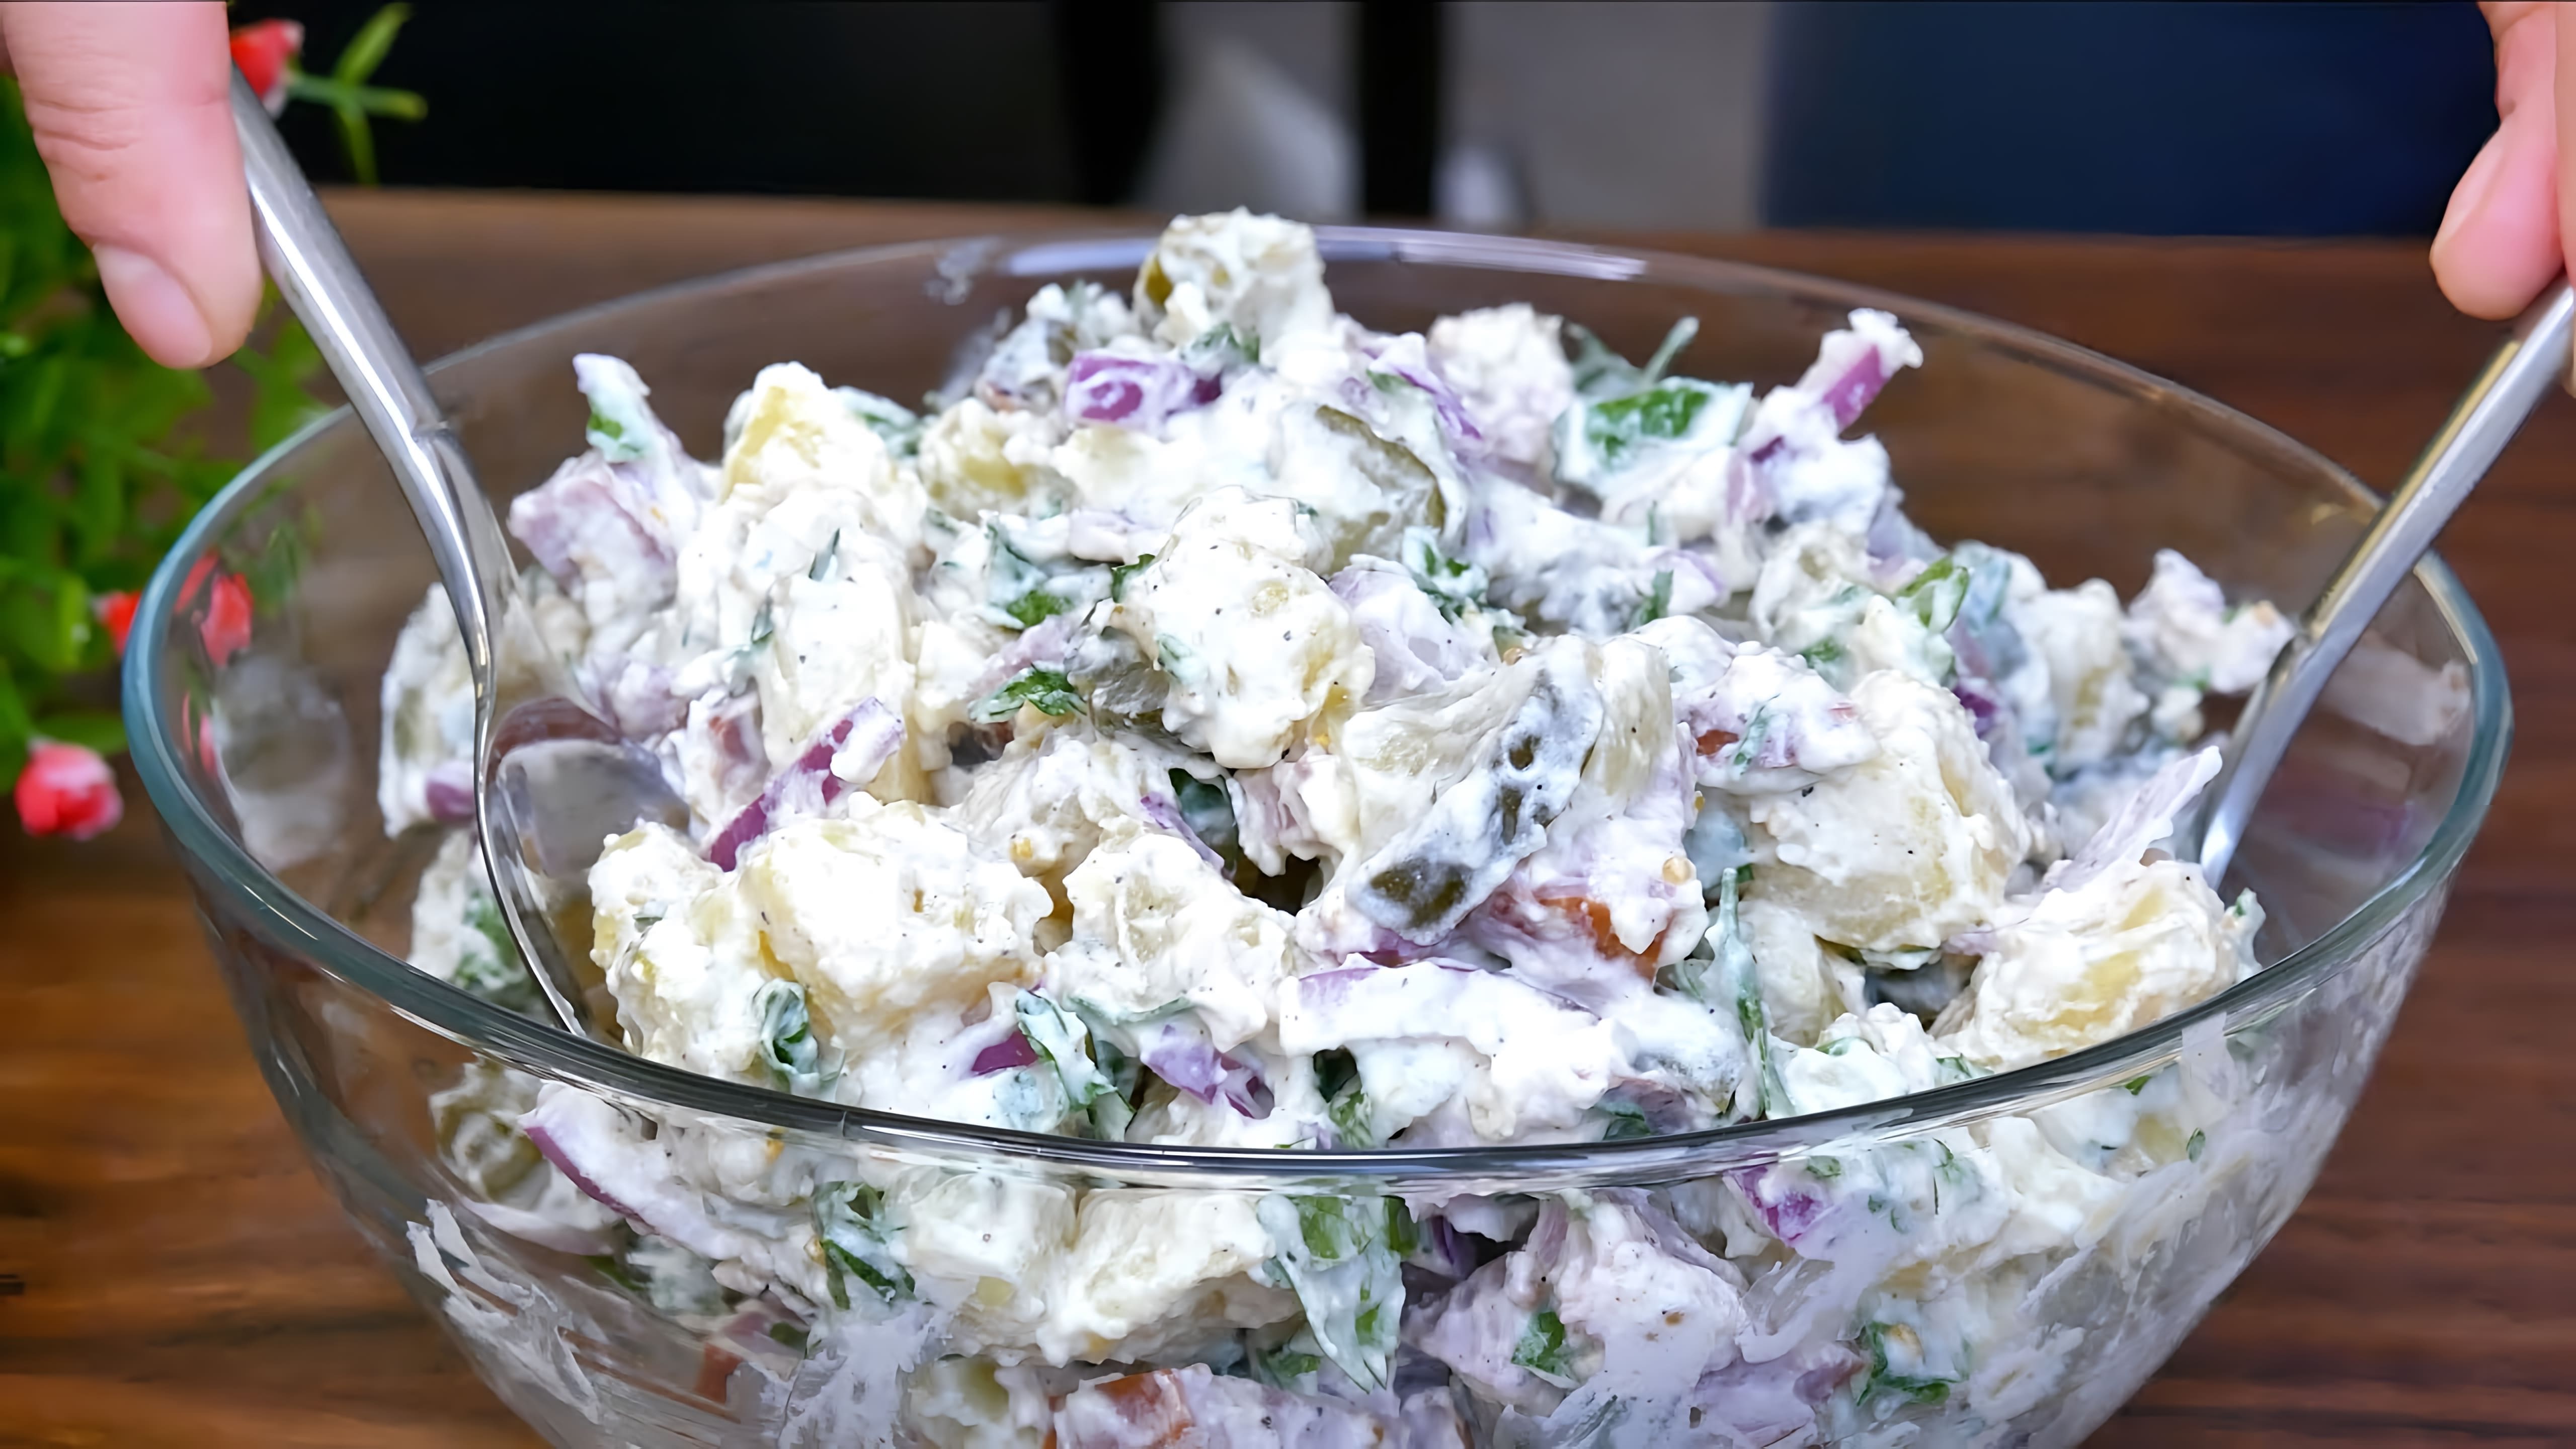 В этом видео демонстрируется рецепт приготовления вкусного немецкого салата